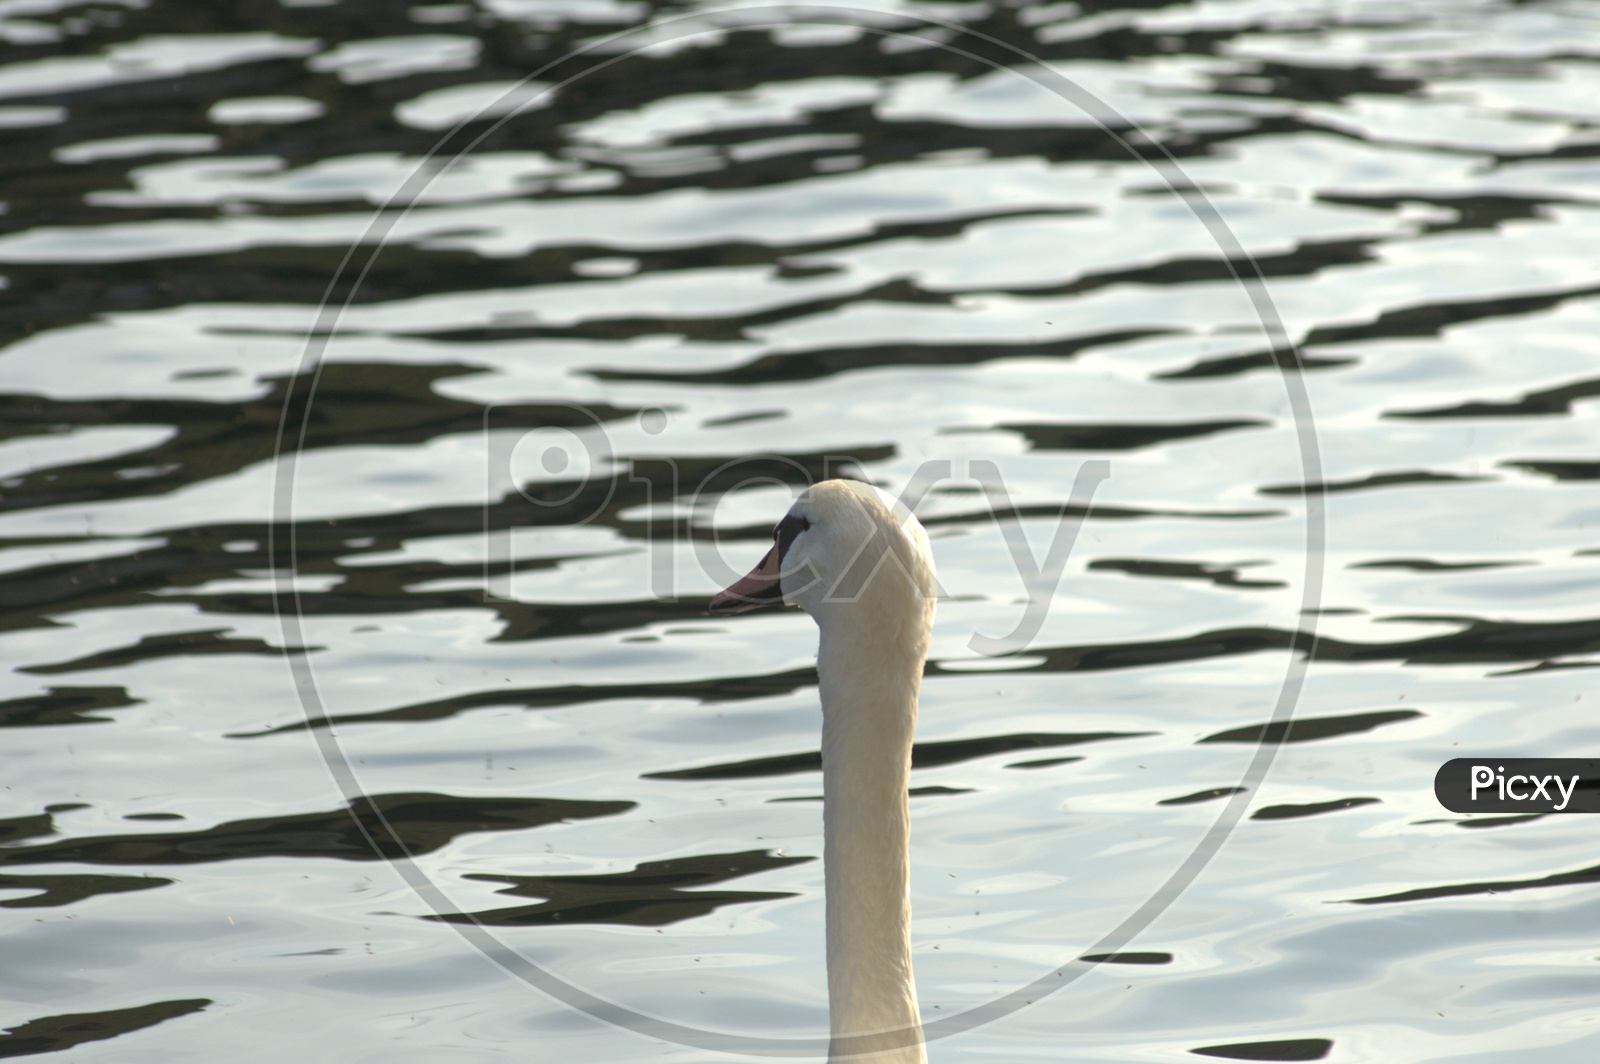 A Tundra Swans neck